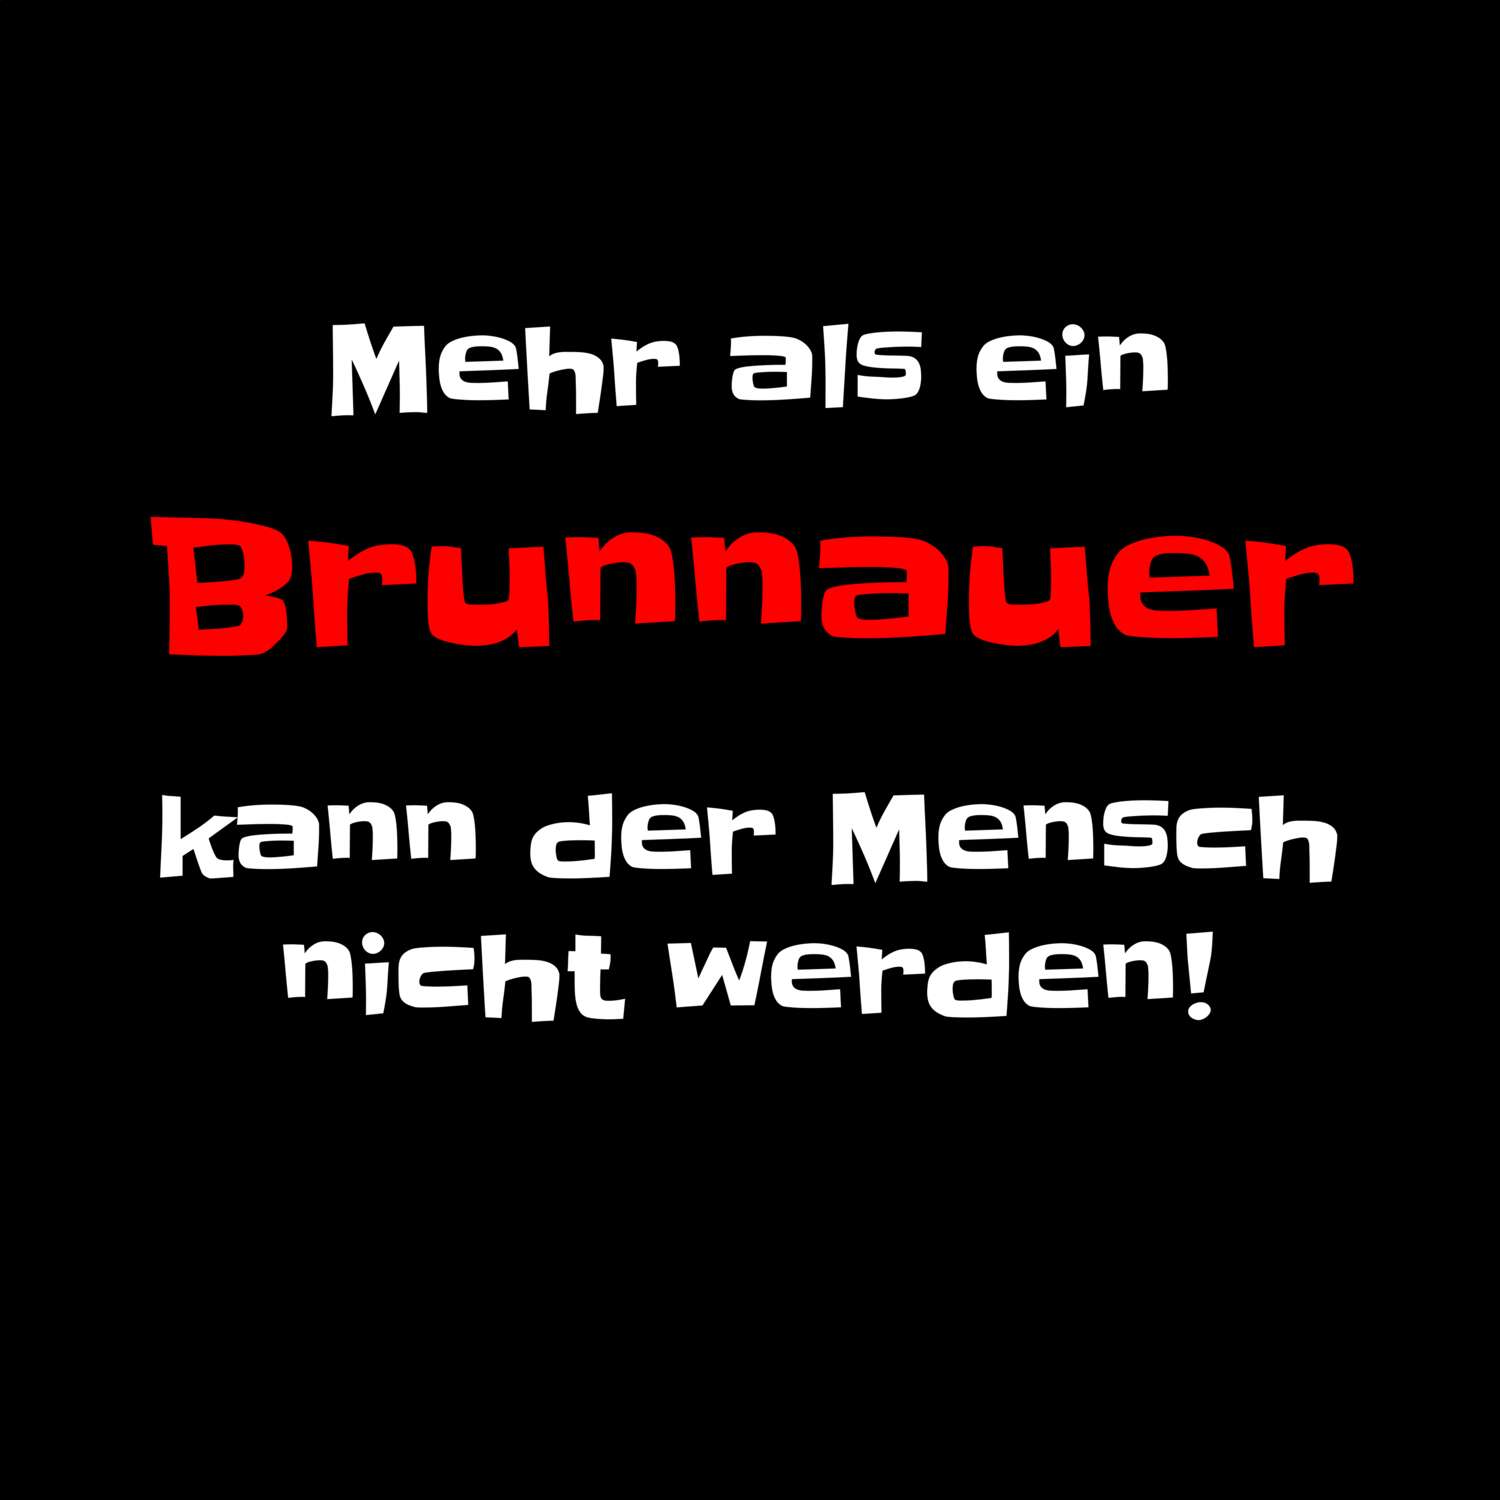 Brunnau T-Shirt »Mehr als ein«